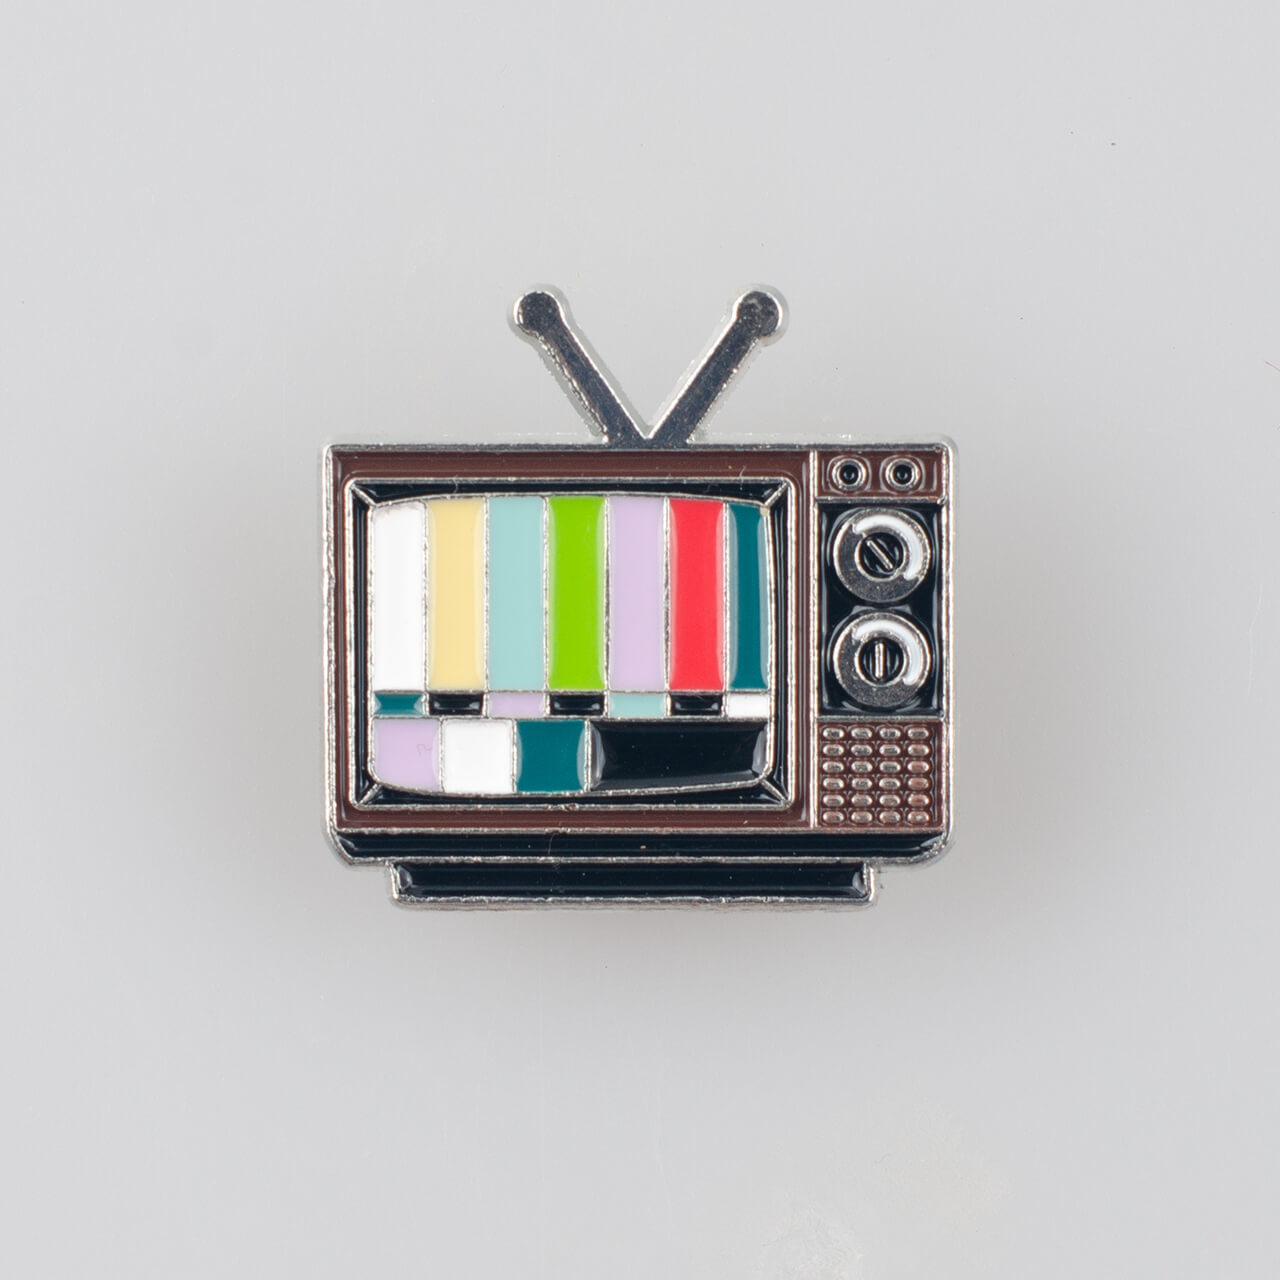 Telewizor retro znaczek pin, metal kolor srebrny/ kolorowa emalia, roz. 30 x 30 mm